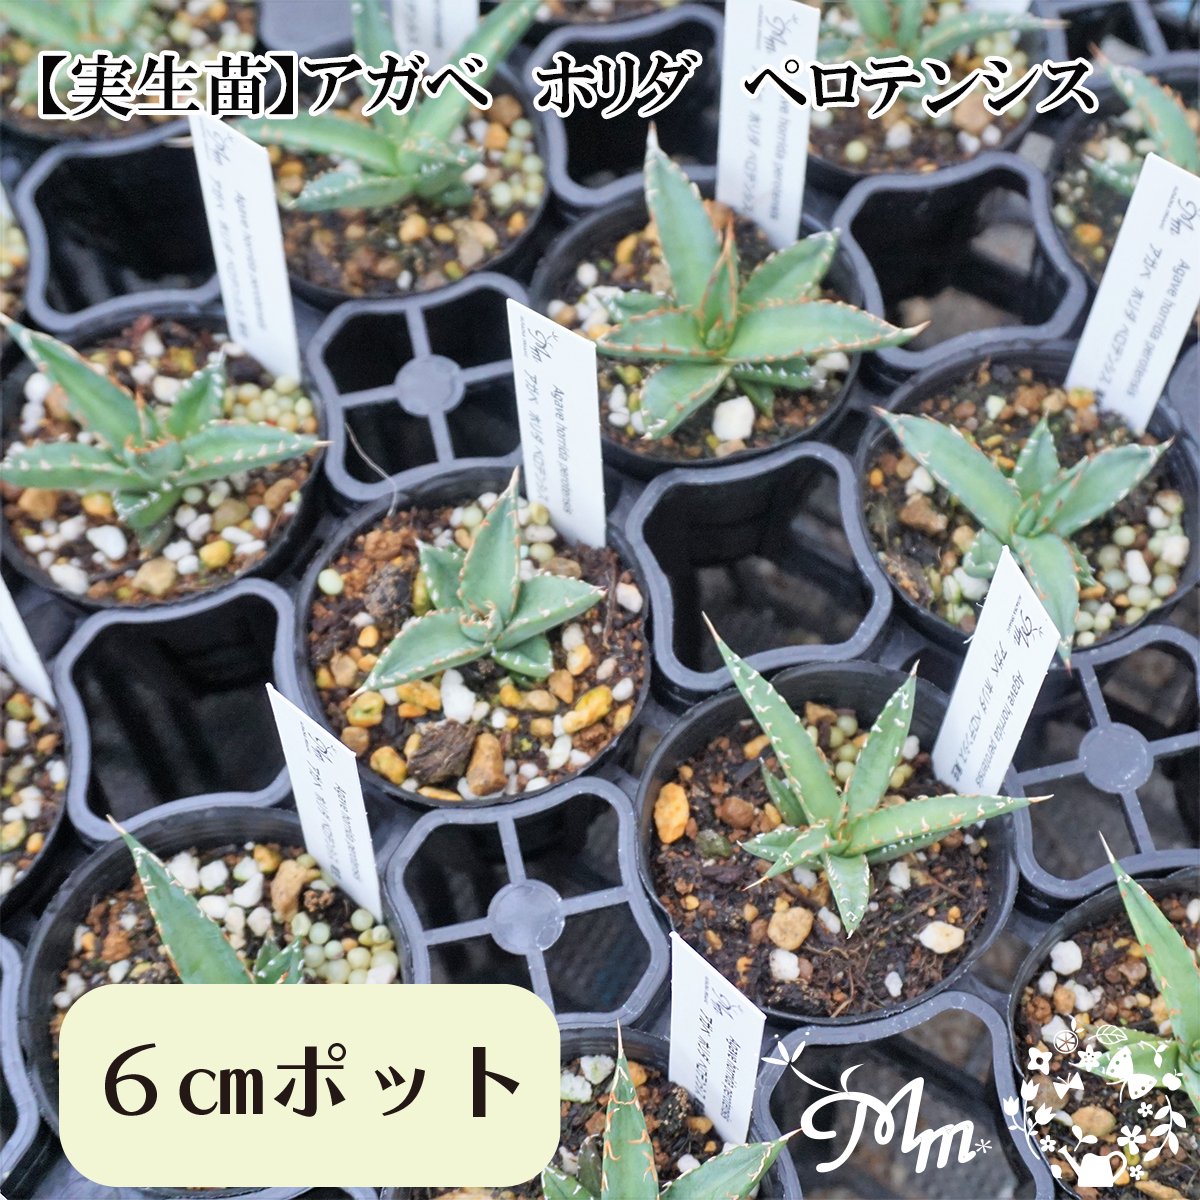 【実生苗(実生株)】Agave horrida perotensis(アガベ ホリダペロテンシス)6㎝ポット苗